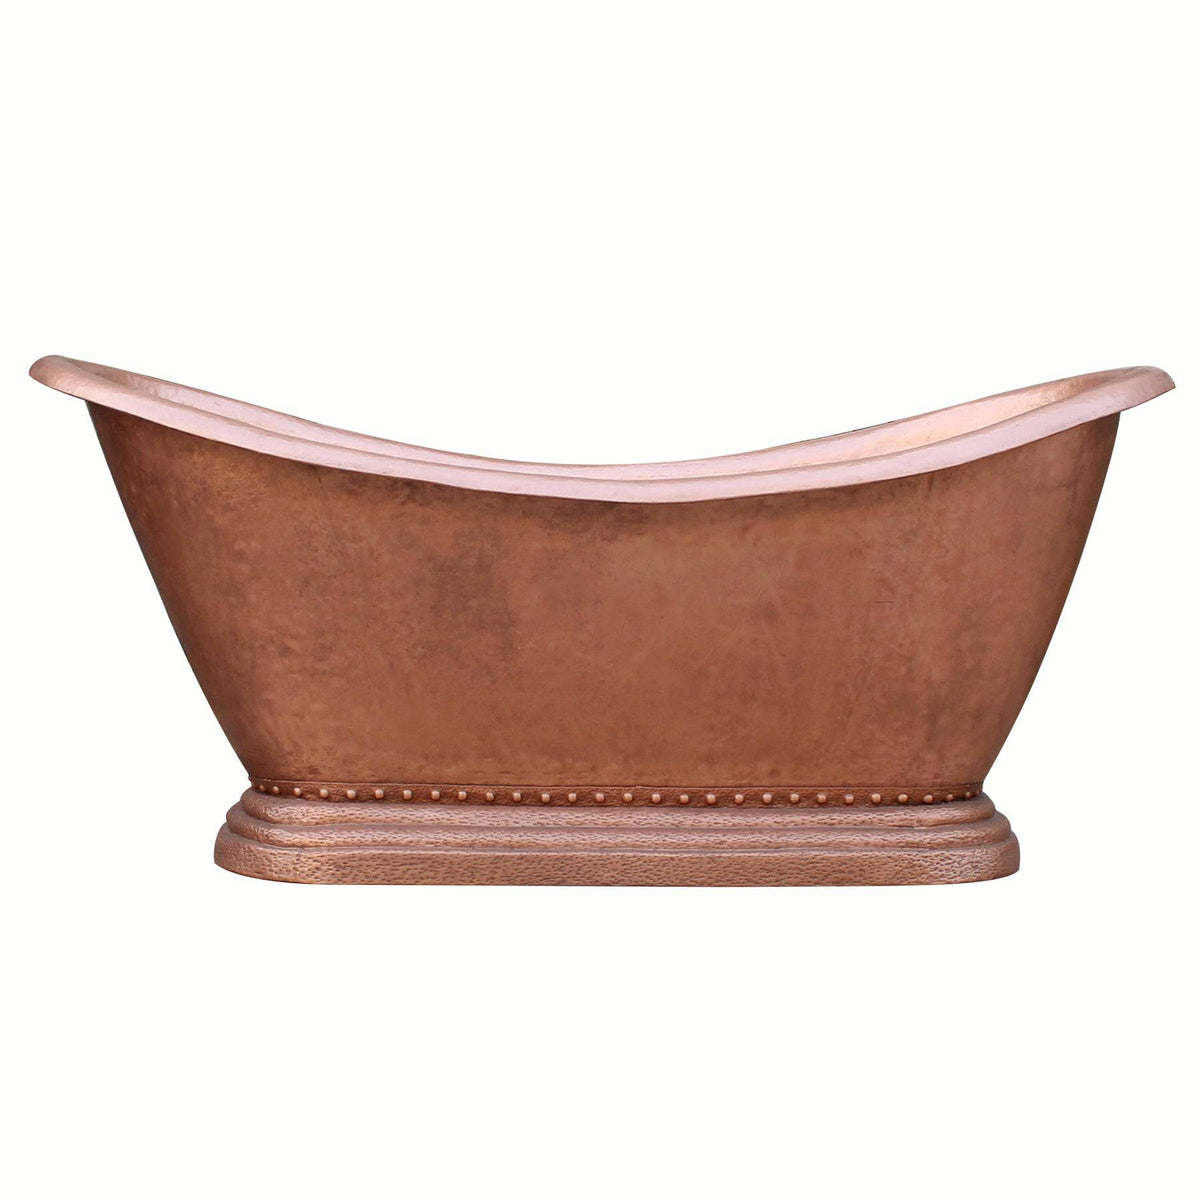 Fobest Handmade Double-Slipper Custom Copper Bathtub FBT-3